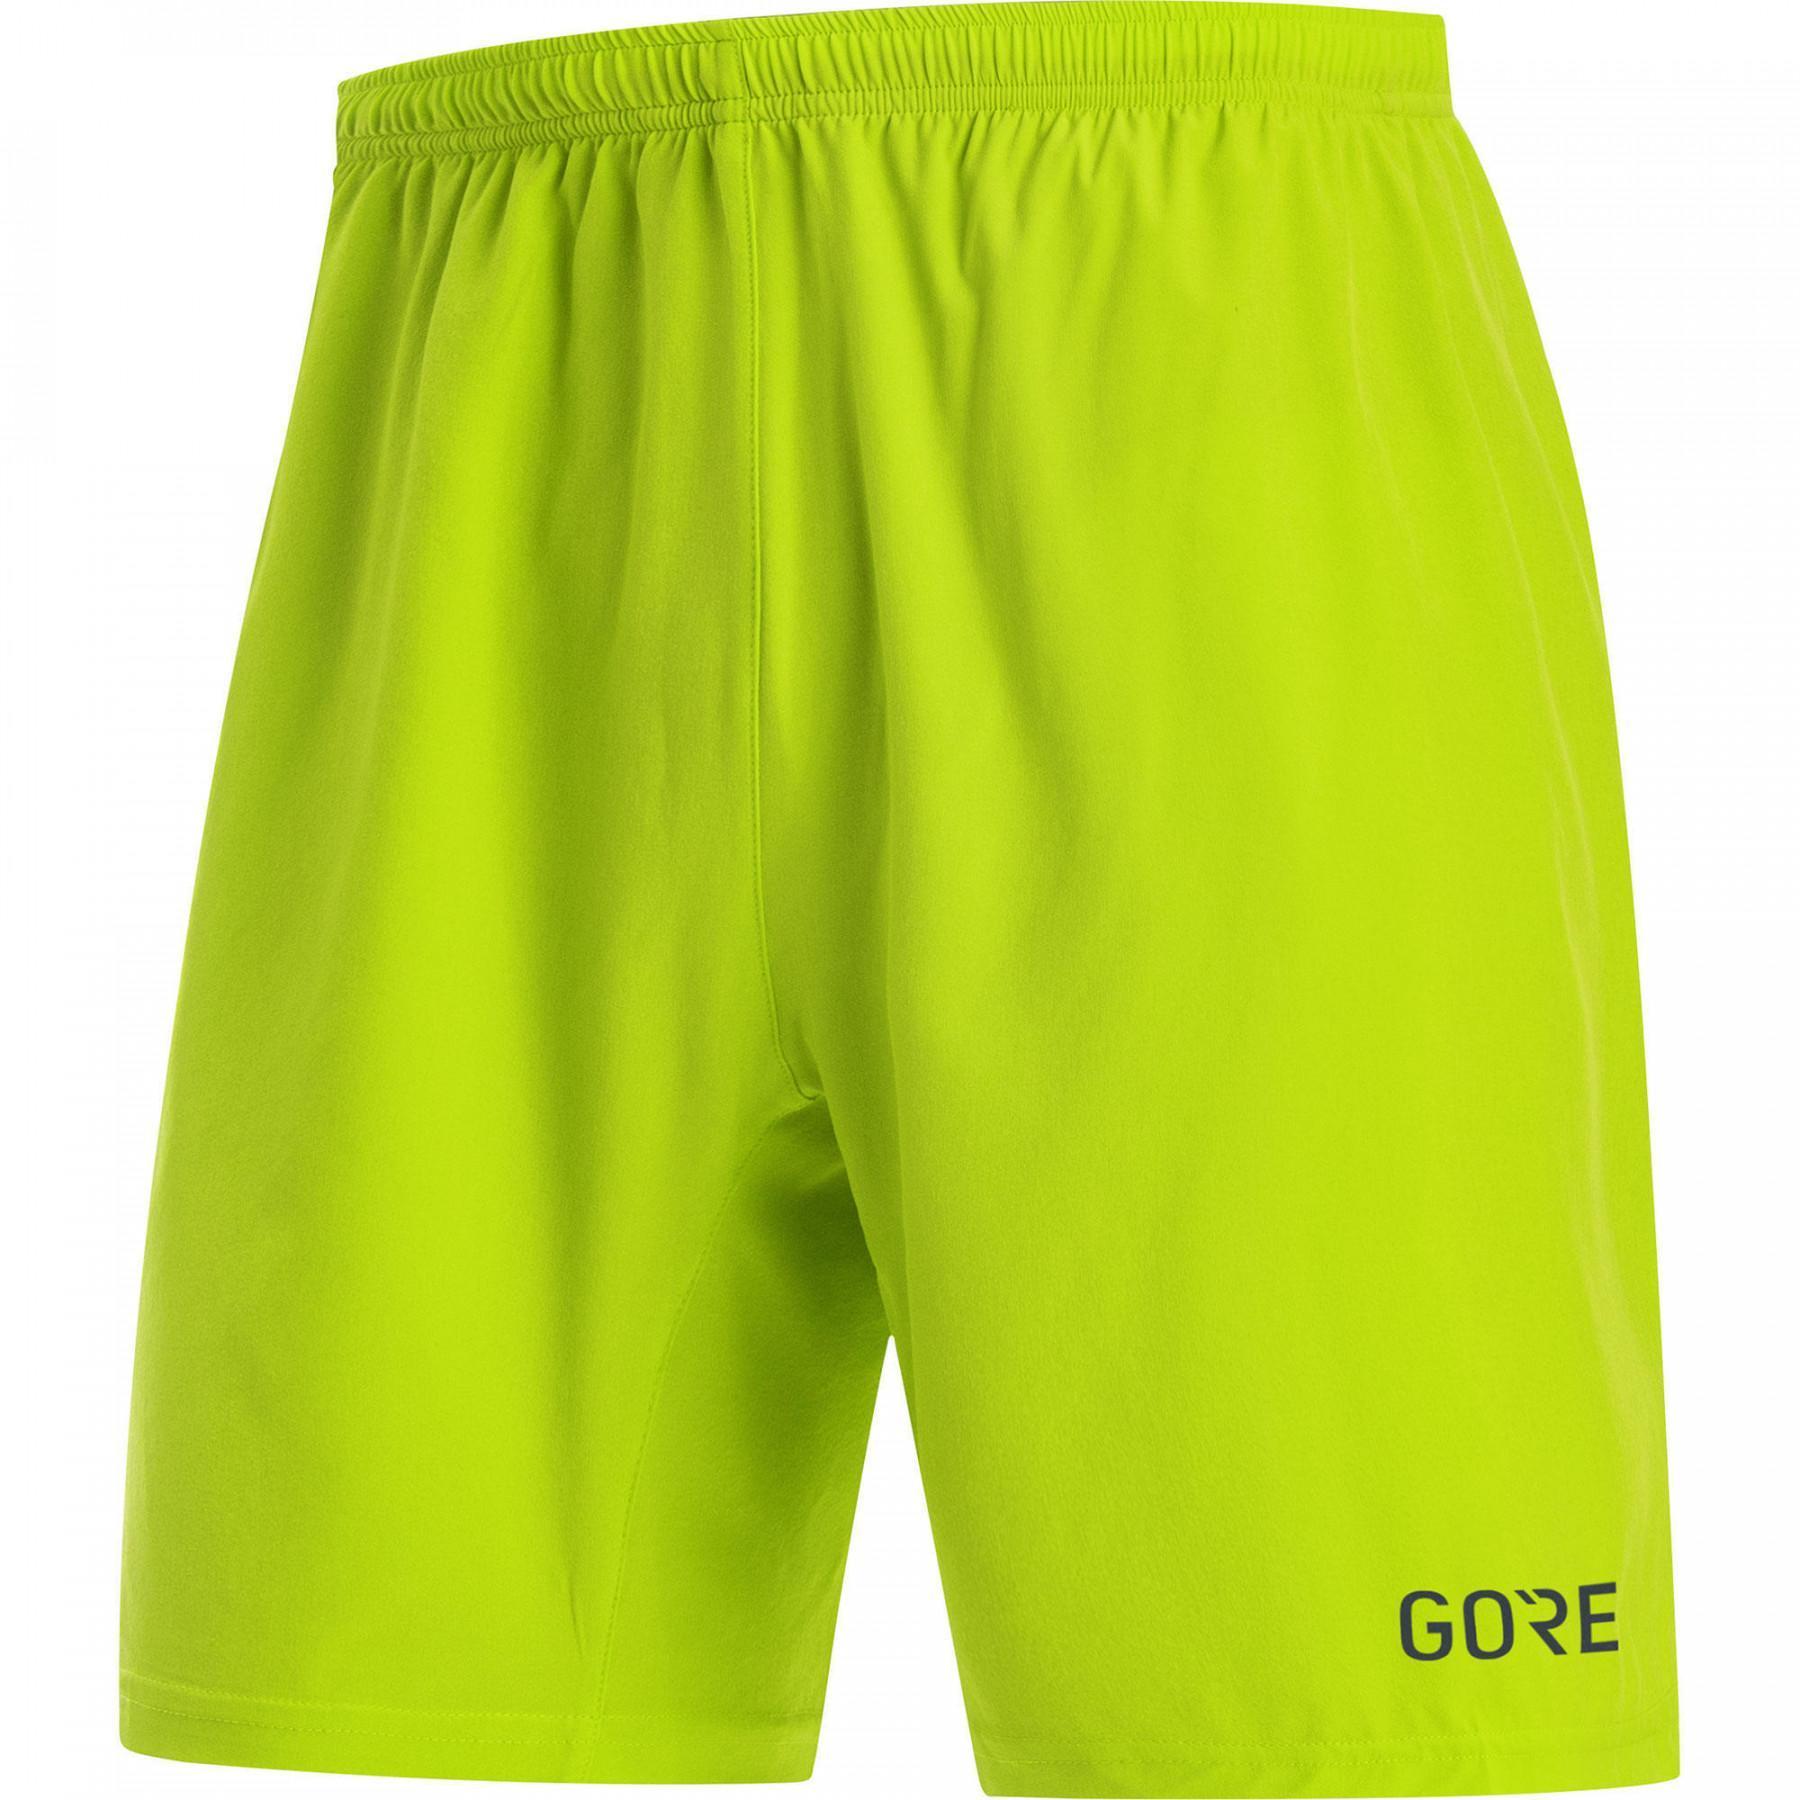 Pantalón corto Gore R5 5 Inch